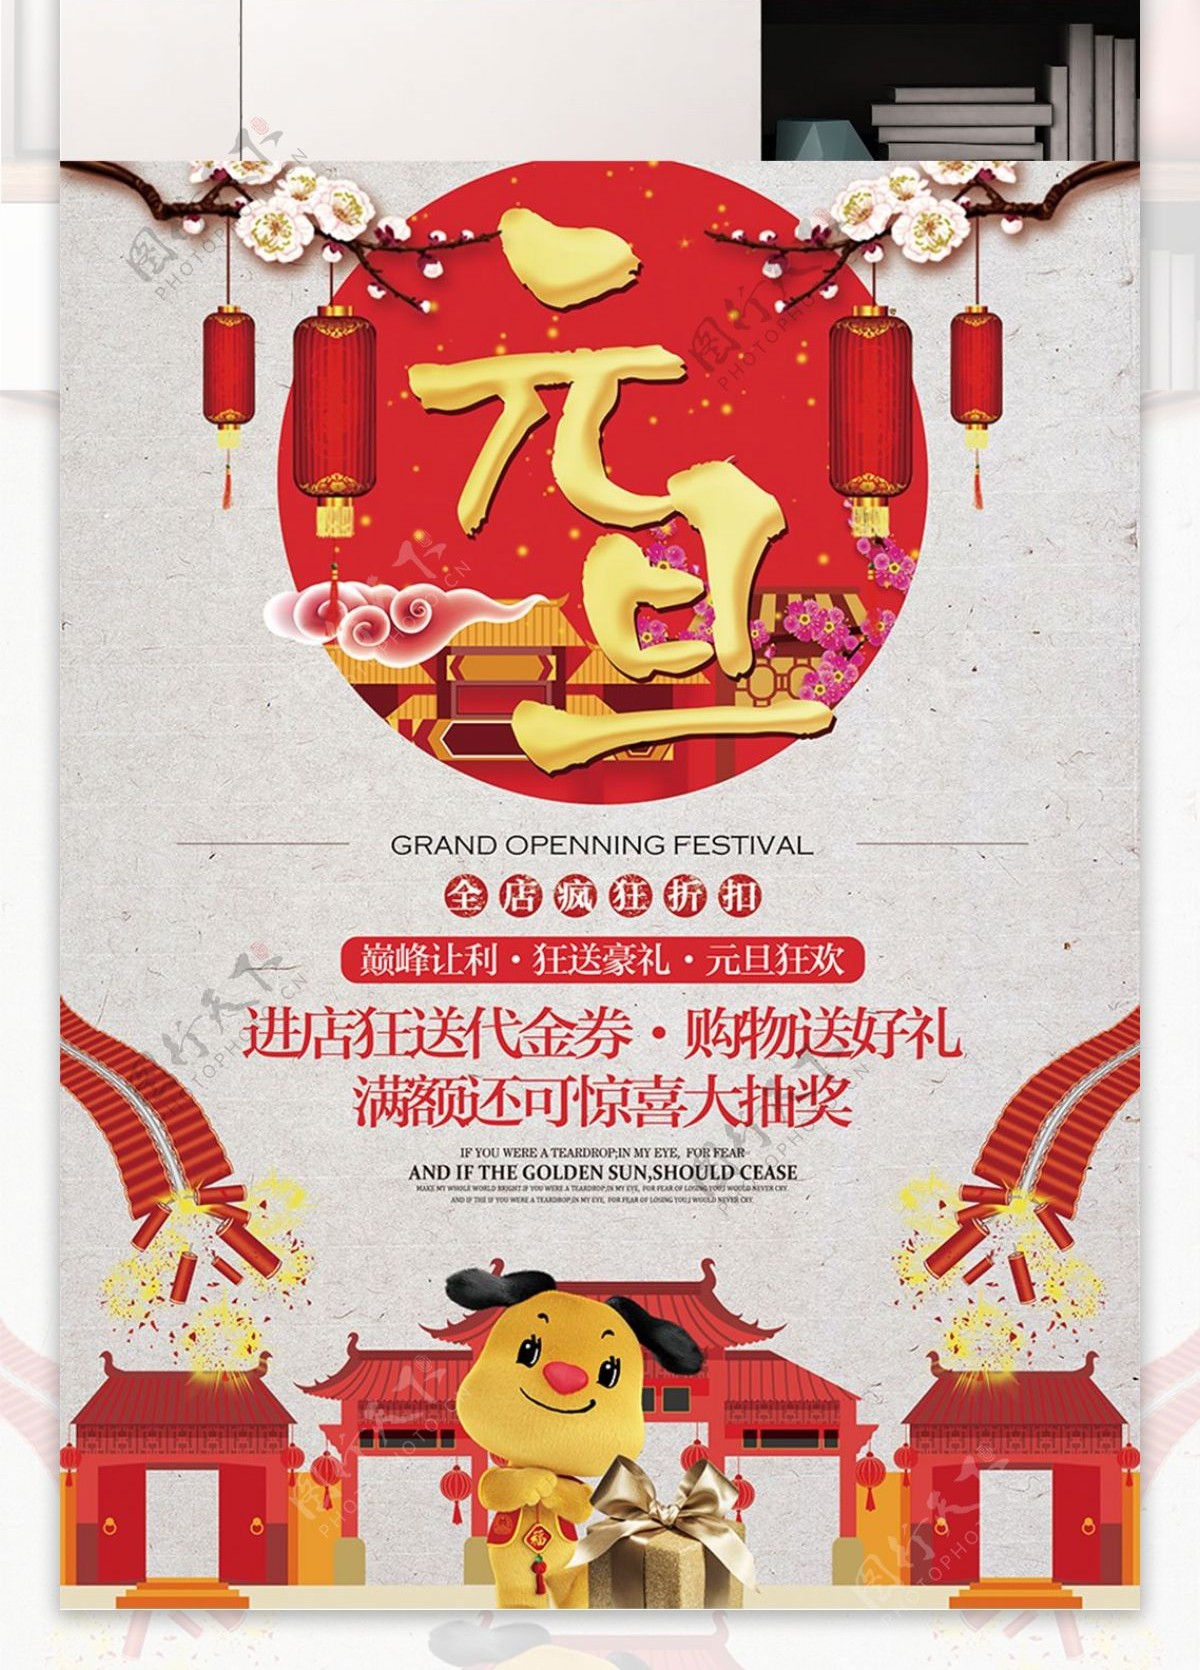 中国风喜庆狗年元旦节日宣传促销海报展板